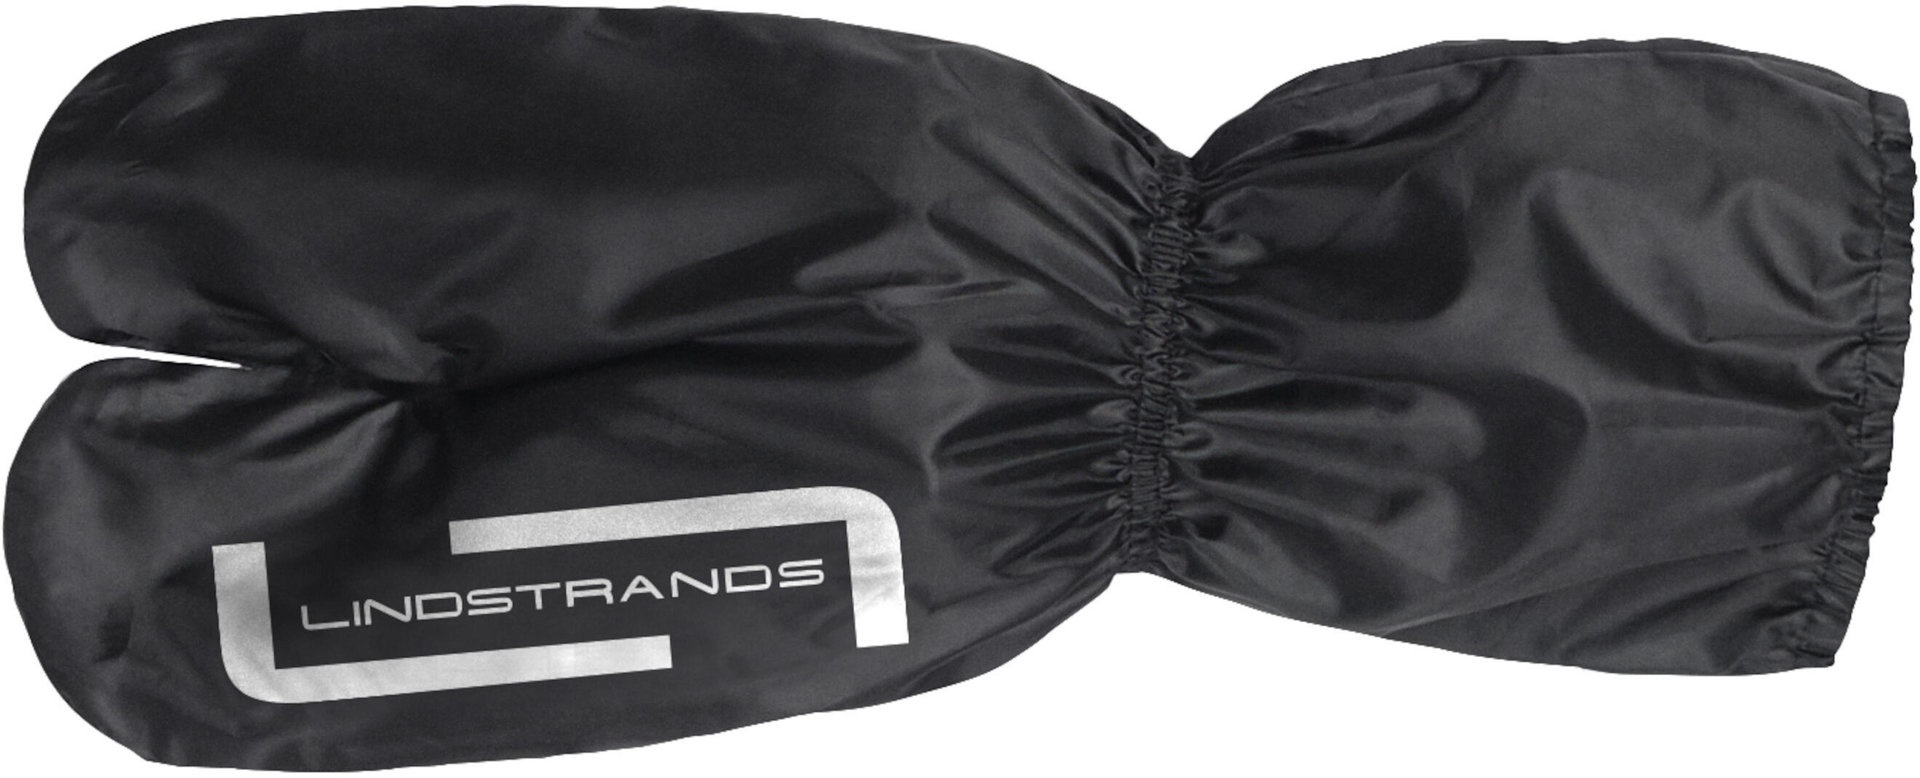 Lindstrands RC Regenhandschuhe, schwarz, Größe M